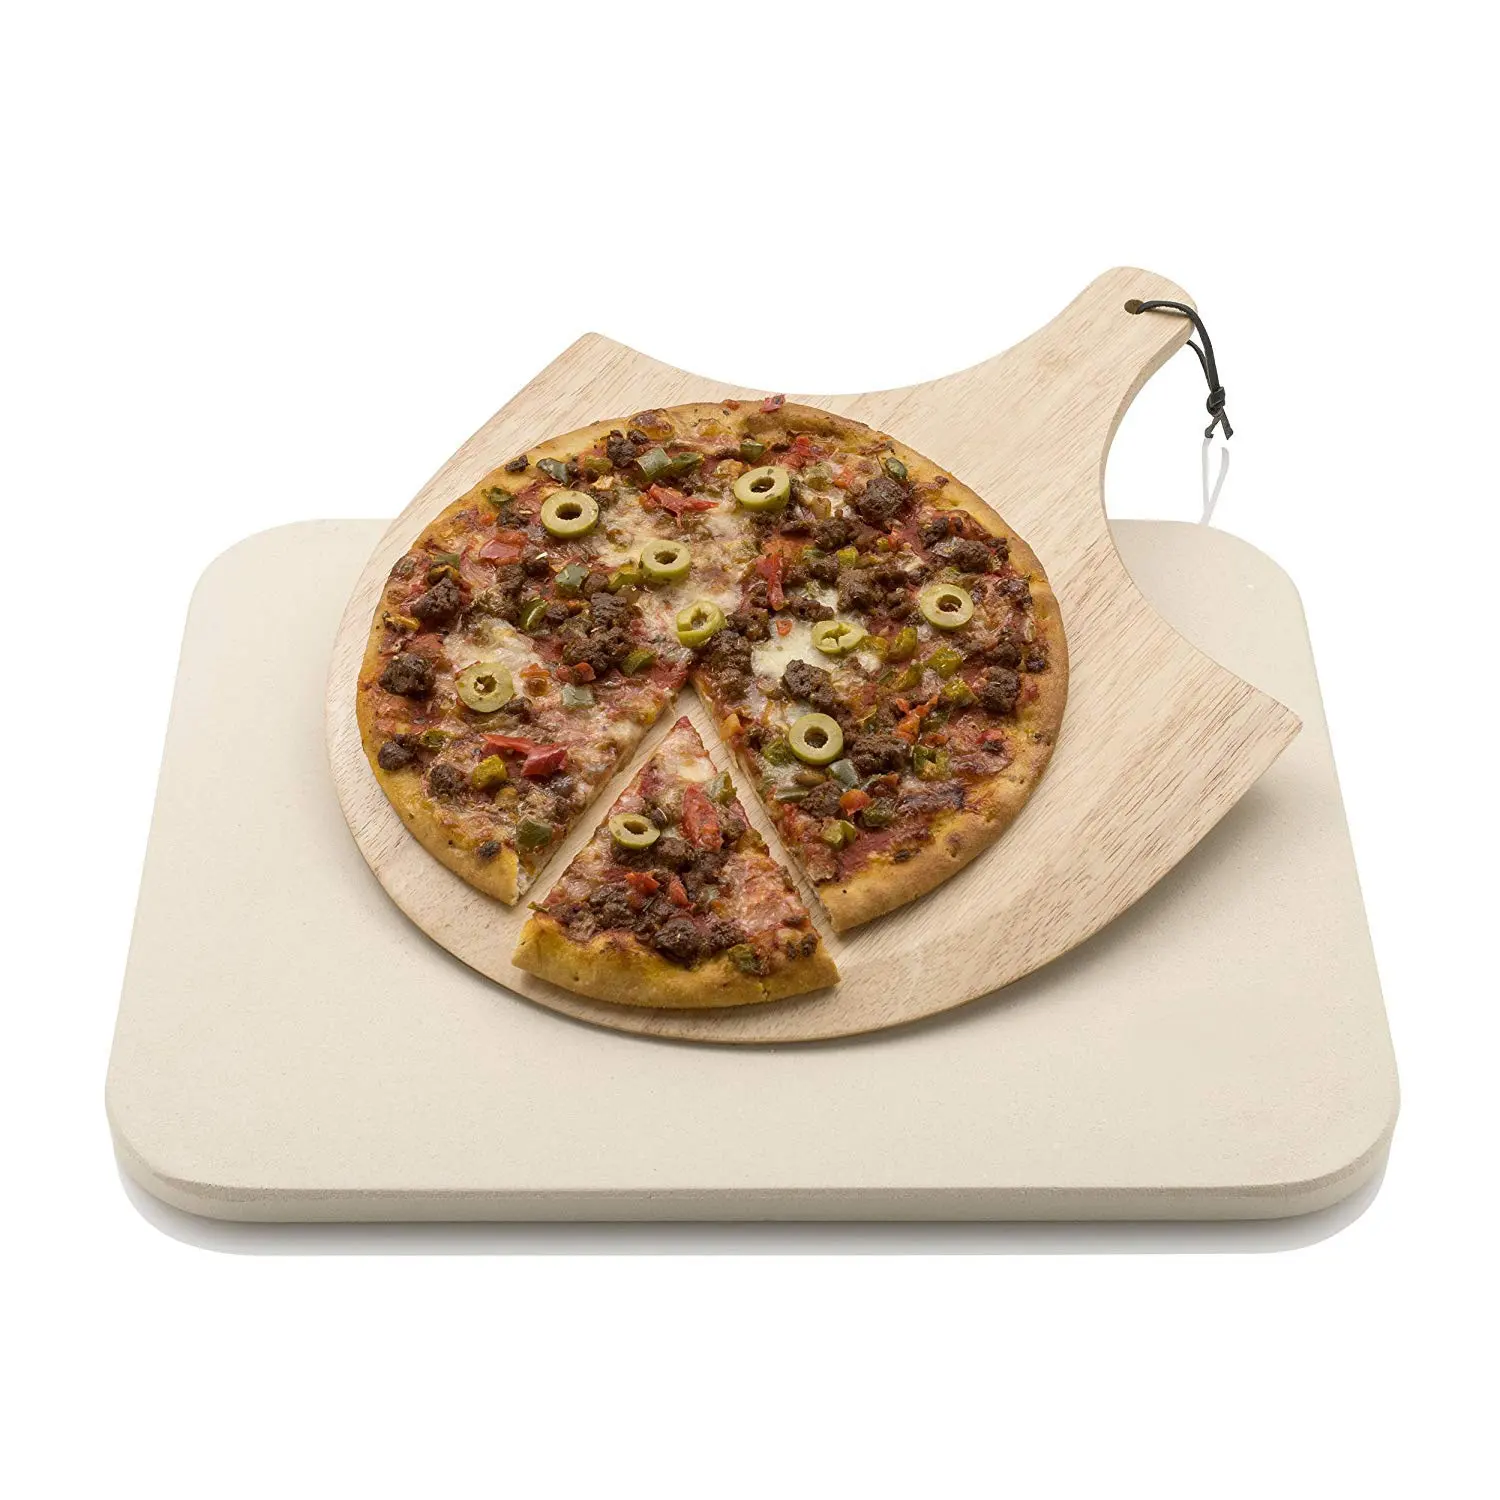 Juego de piedra de pizza con tablero de madera, horno para hornear pizza, pelar pizza, paleta de pizza, oferta de Amazon